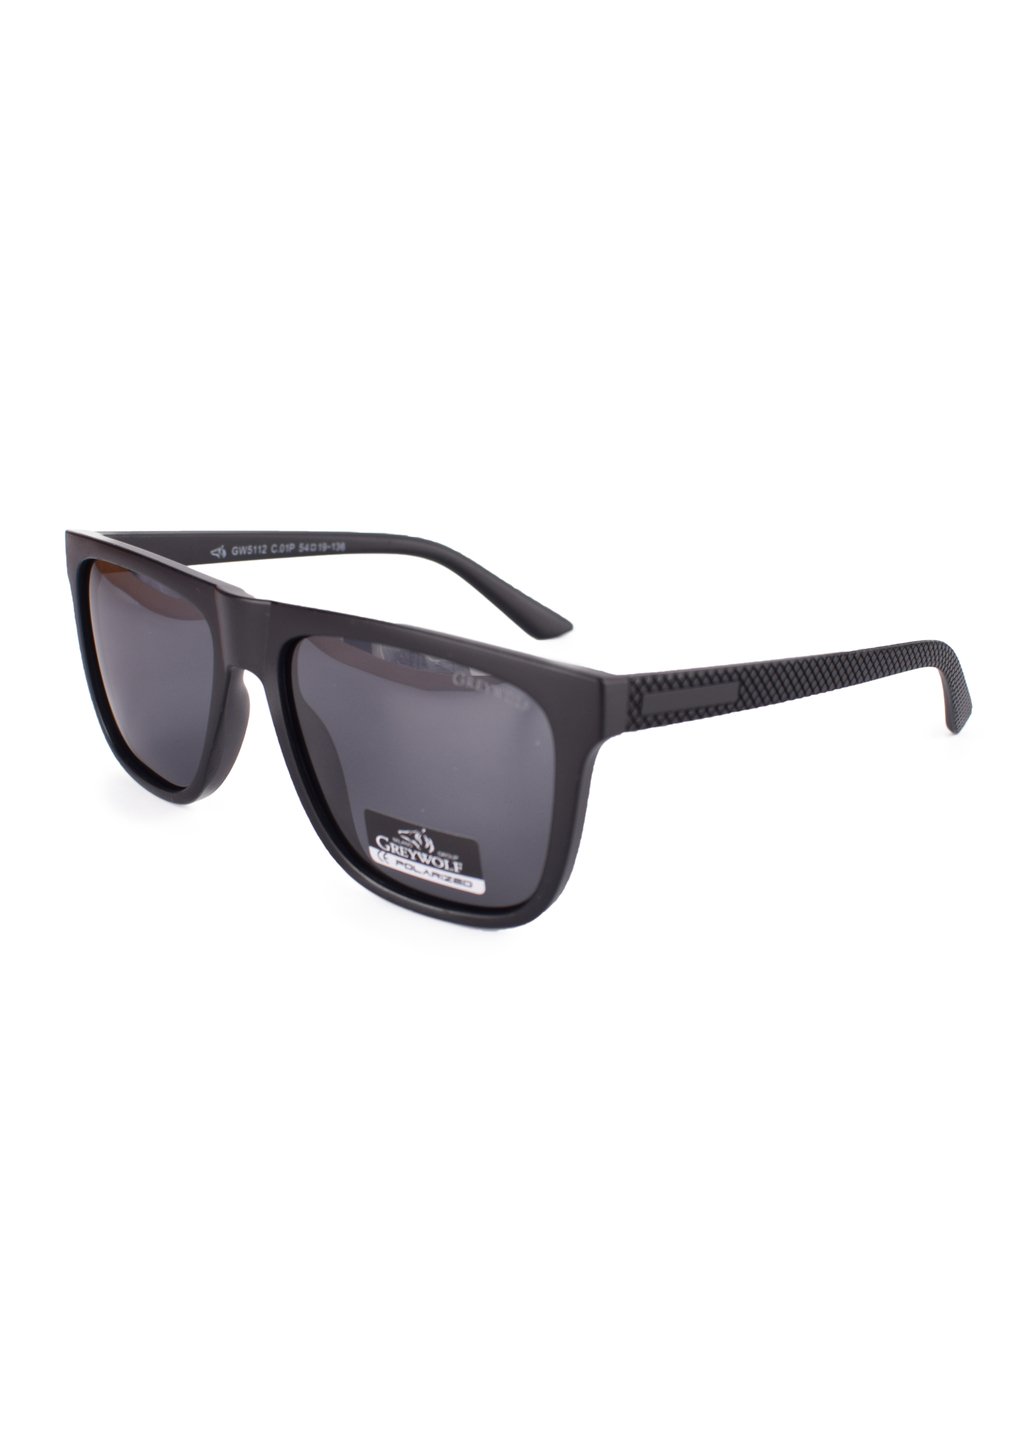 Купить Черные мужские солнцезащитные очки Gray Wolf с поряризацией GW5112 121012 в интернет-магазине